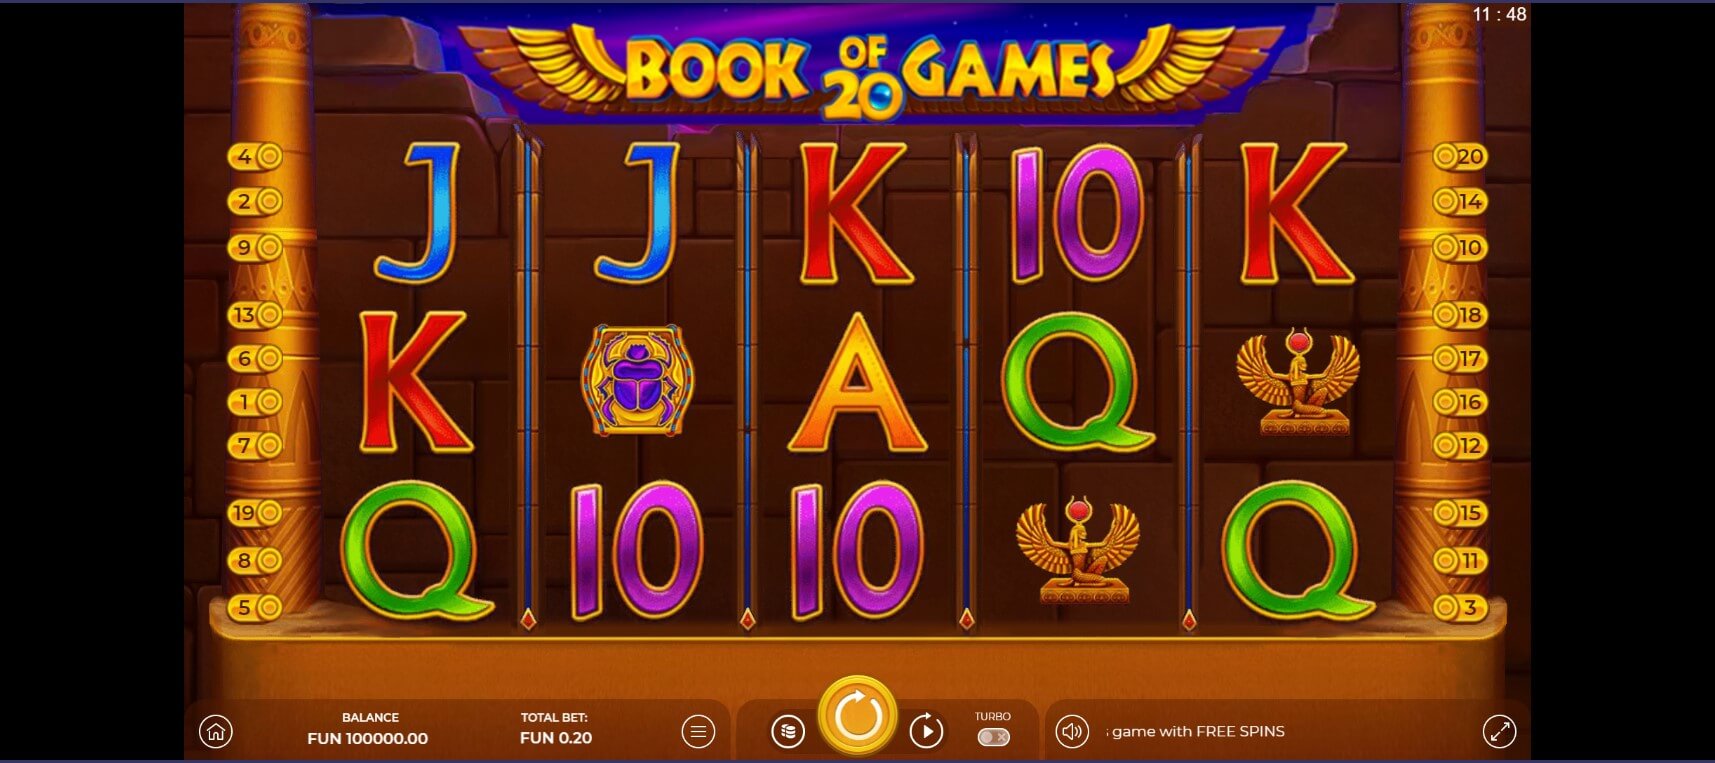 Игровой автомат Book of Games 20